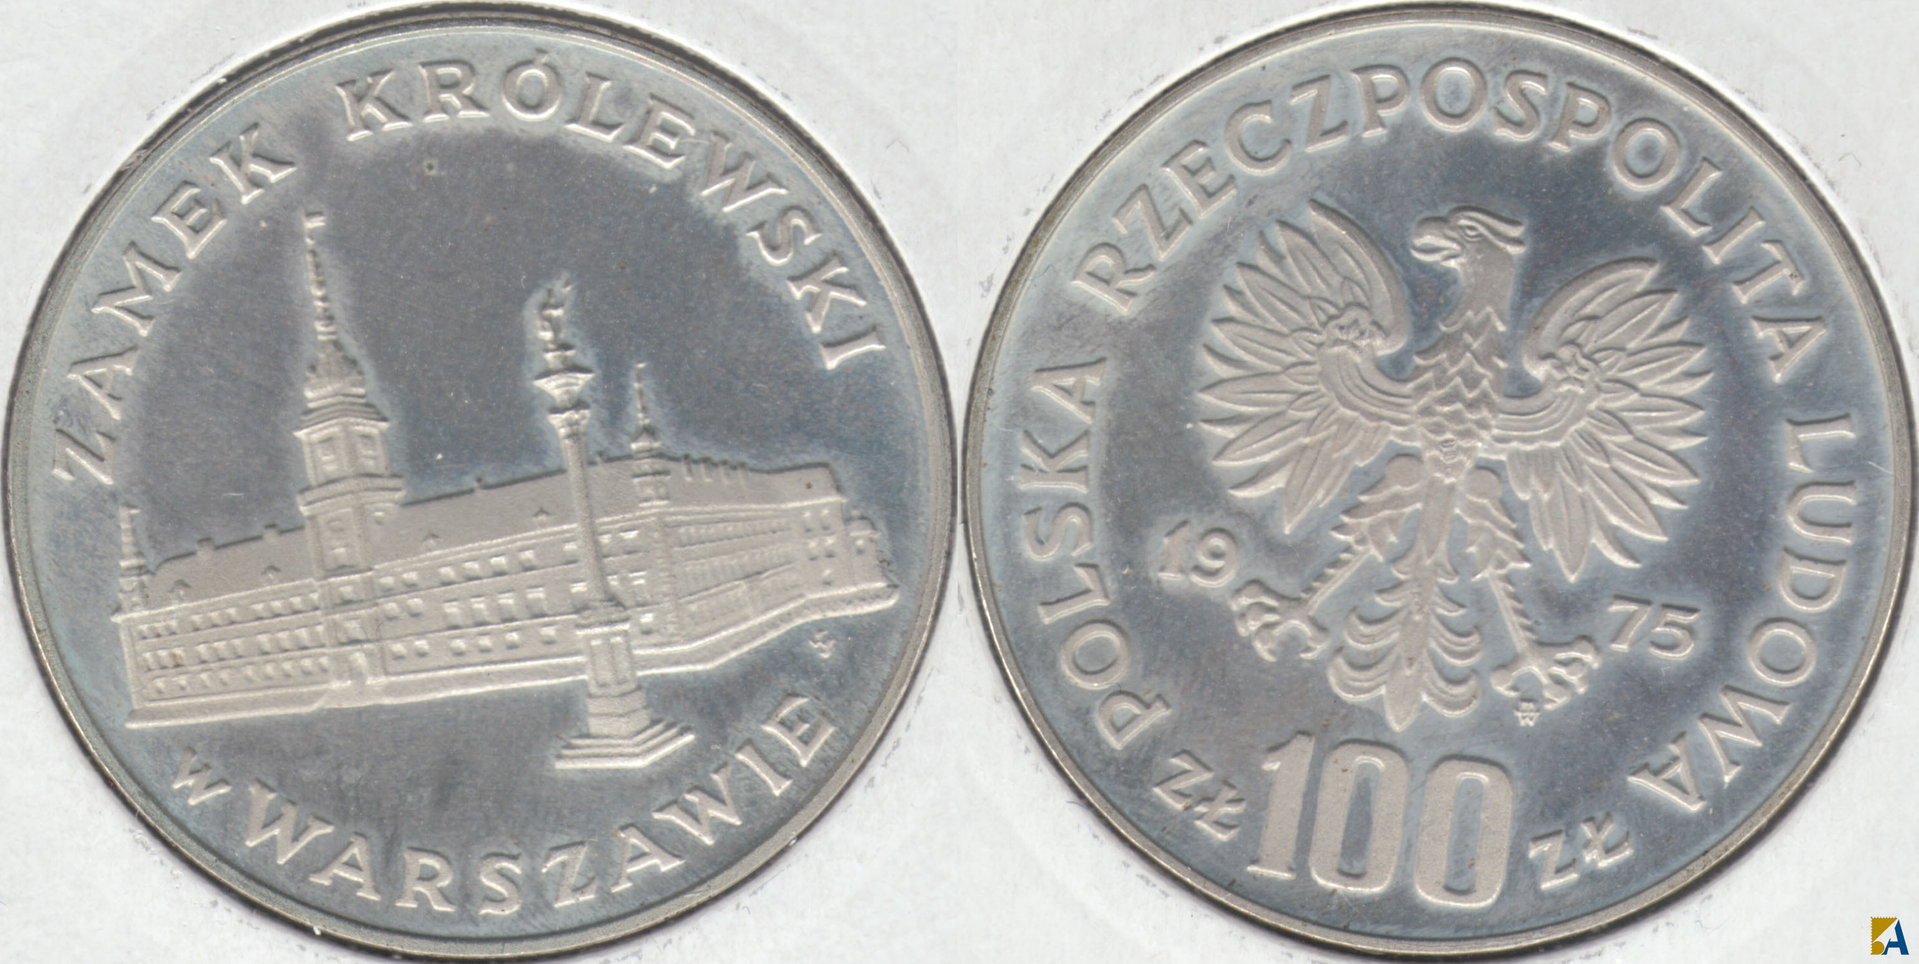 POLONIA - POLSKA. 100 ZLOTYCH DE 1975. PLATA 0.625. (6)